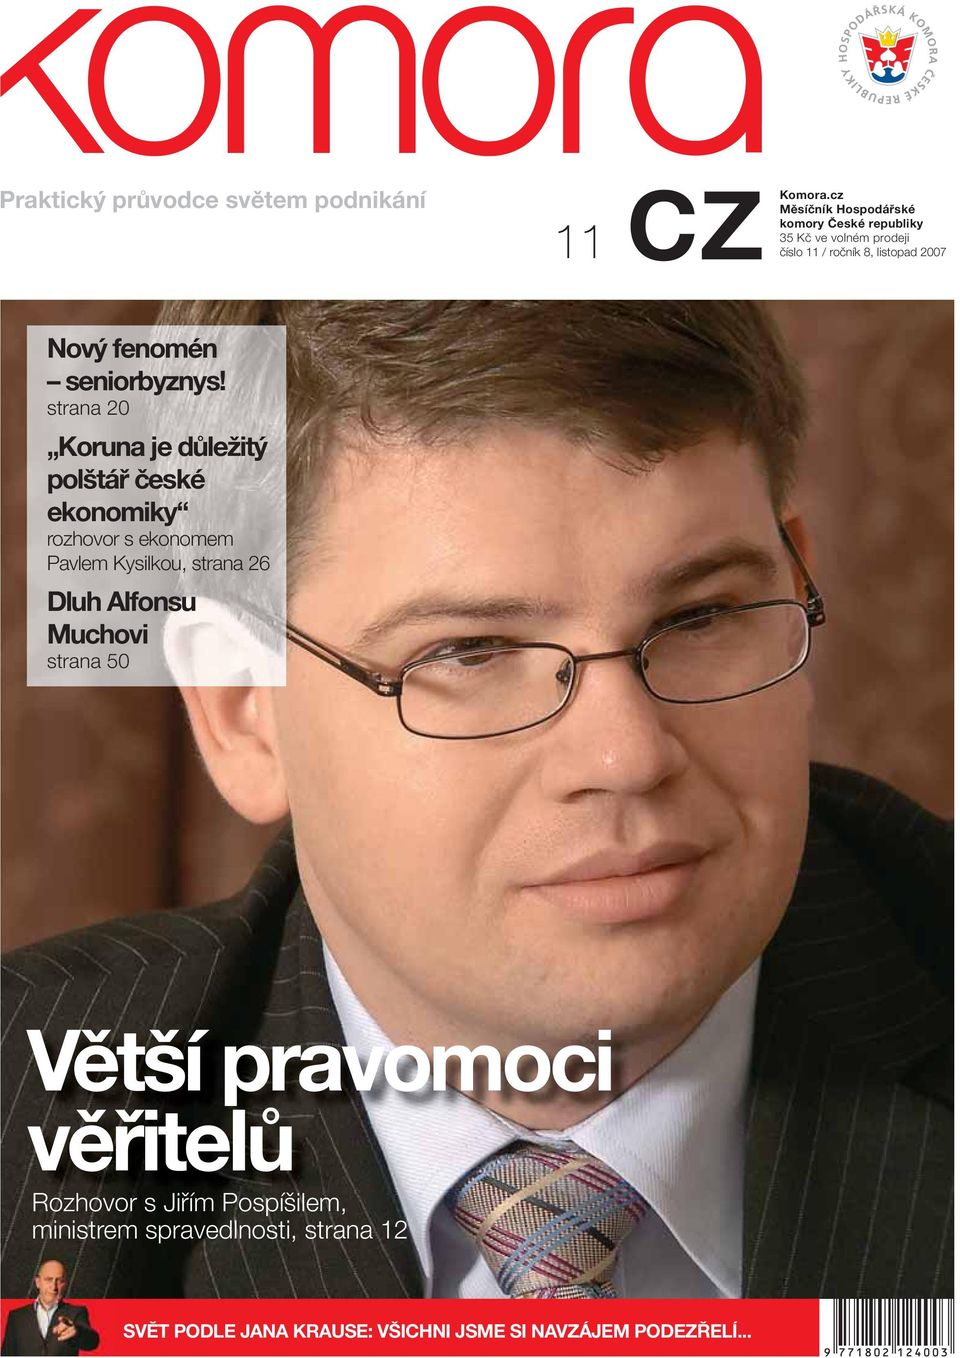 strana 20 Koruna je důležitý polštář české ekonomiky rozhovor s ekonomem Pavlem Kysilkou, strana 26 Dluh Alfonsu